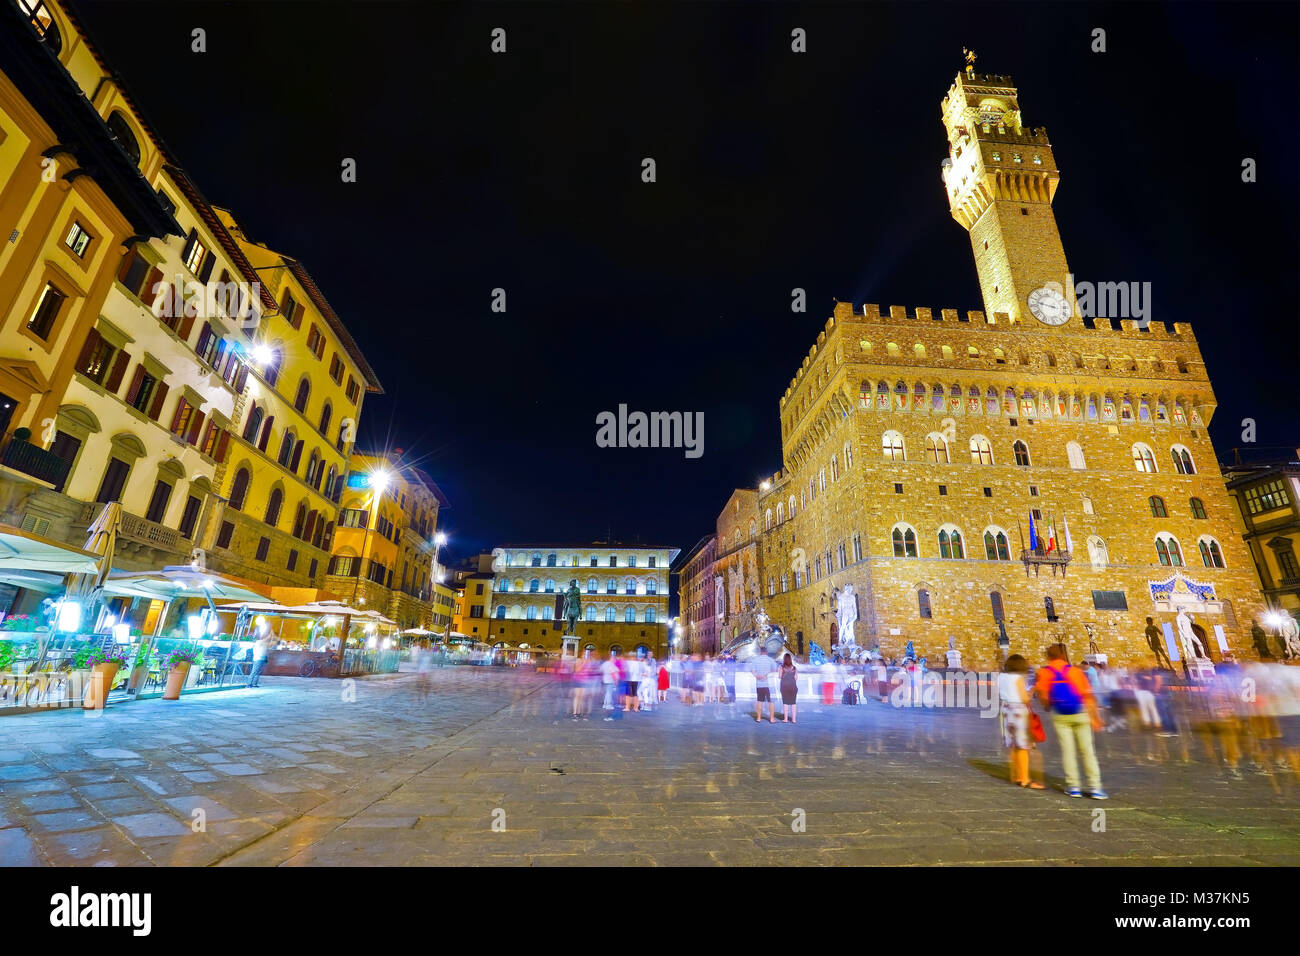 View of the Piazza della Signoria and Palazzo Vecchio in Florence at night. Stock Photo